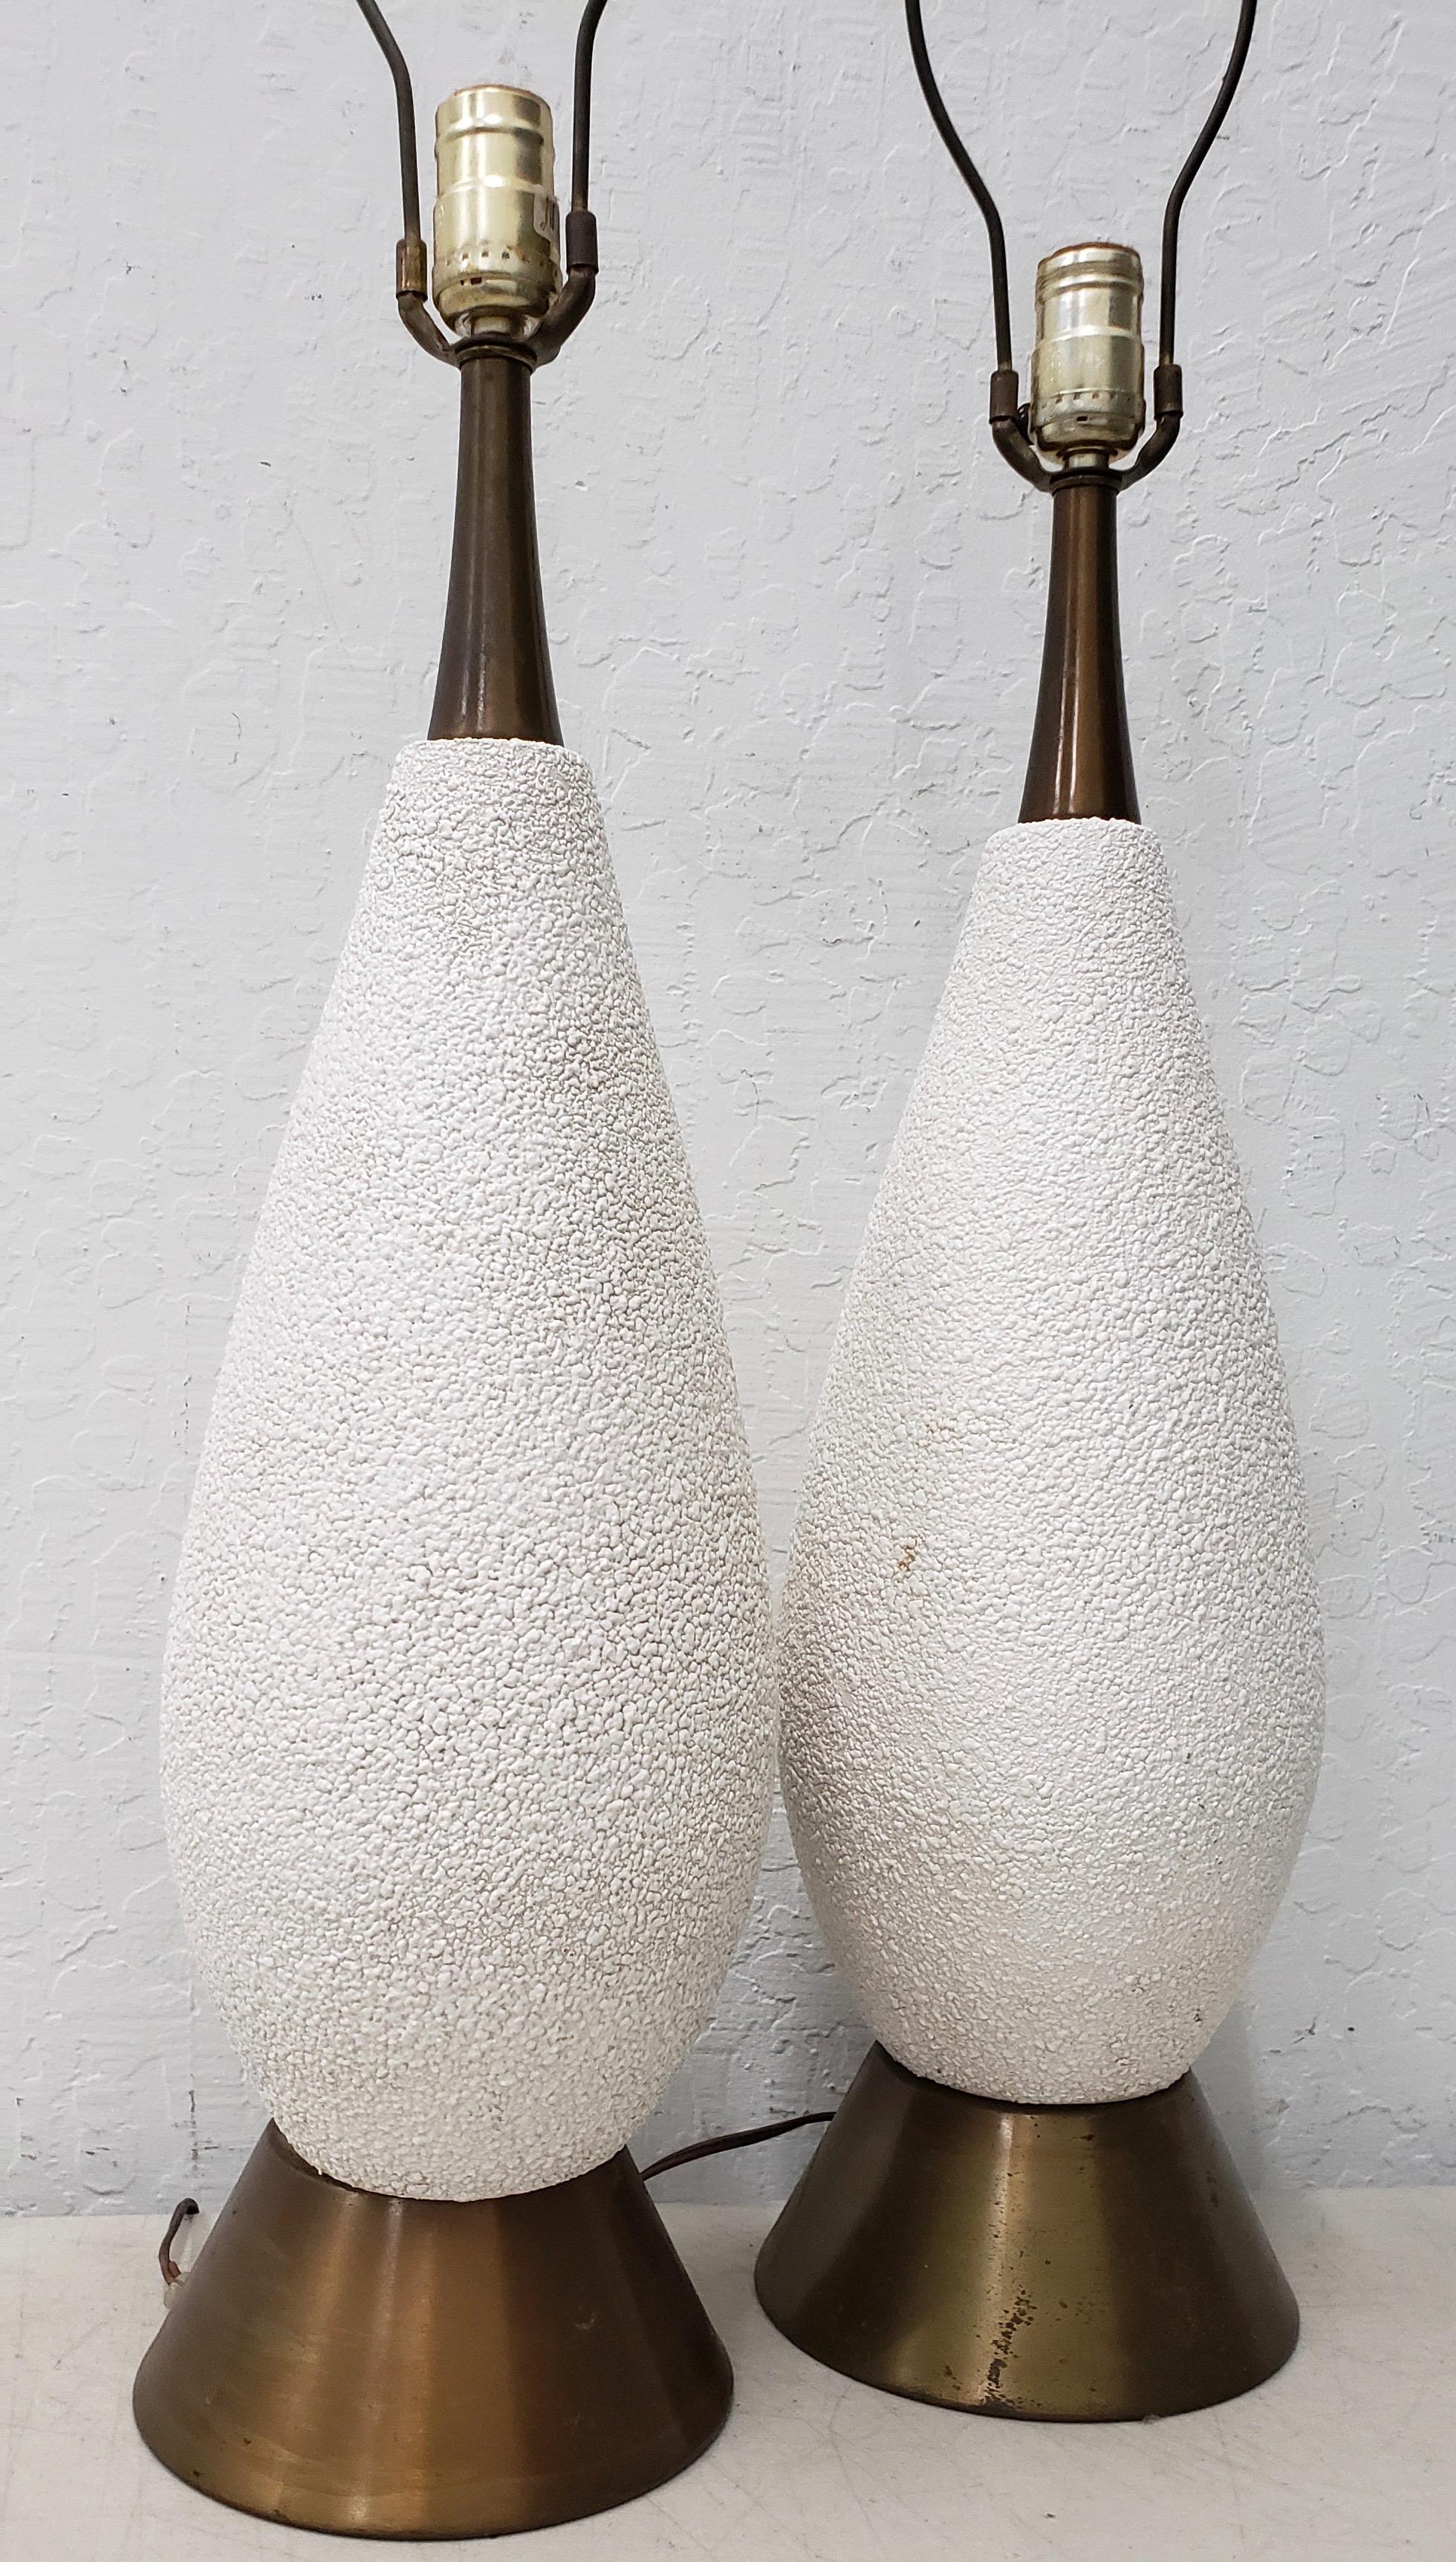 Paire de lampes de table en céramique blanche texturée, datant du milieu du siècle dernier, vers 1950

Céramique blanche texturée. Lampes vintage câblées et prêtes à éclairer.

Chaque lampe mesure 7